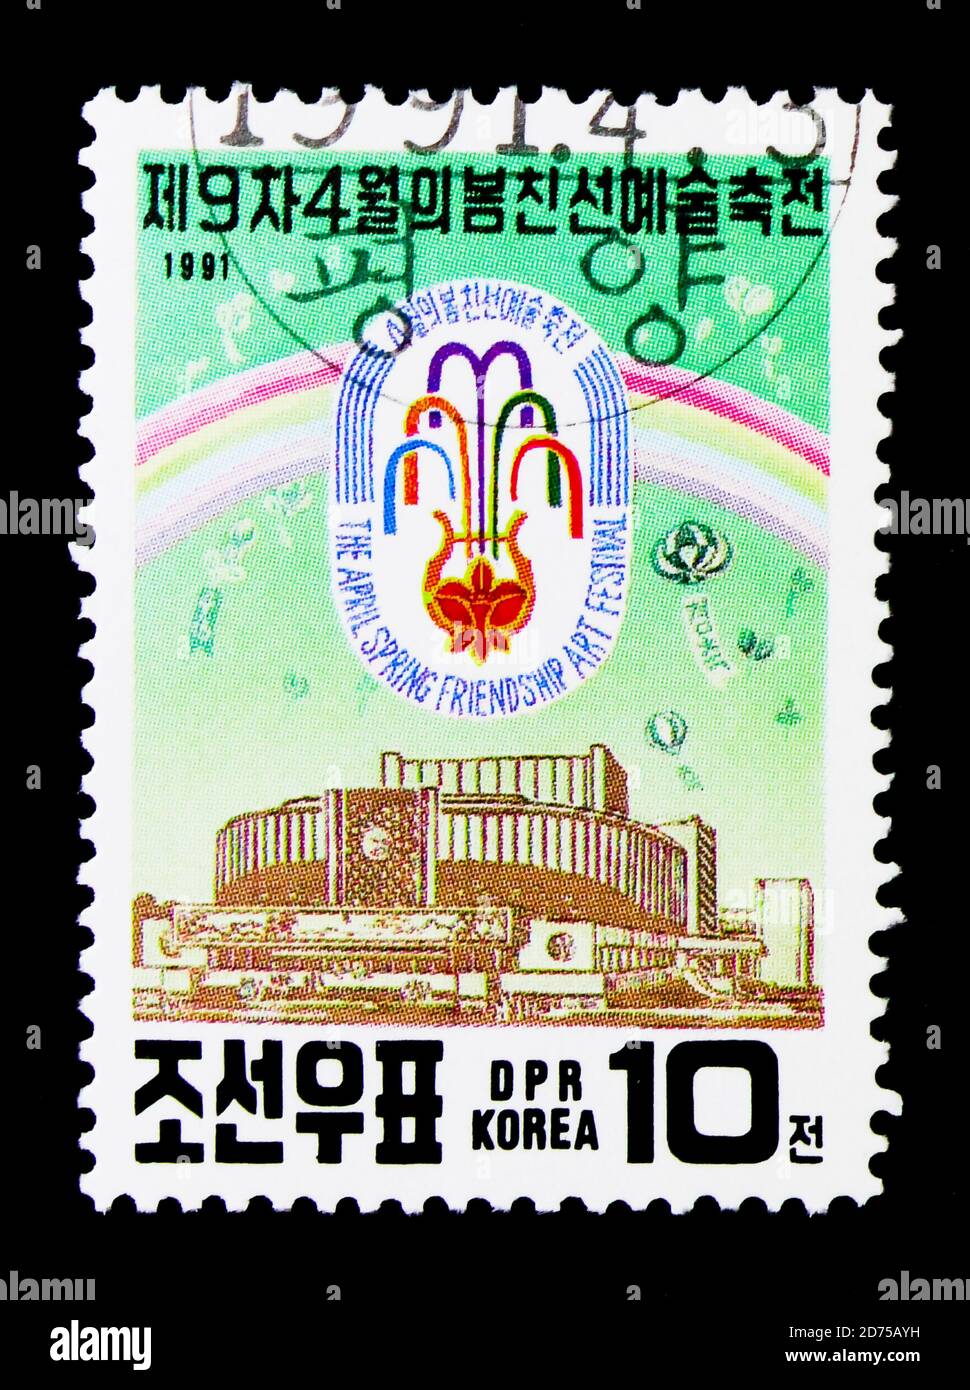 MOSCOU, RUSSIE - 25 NOVEMBRE 2017 : un timbre imprimé en république populaire démocratique de Corée présente le Festival d'art, 9e Festival d'art de l'amitié du printemps, P Banque D'Images